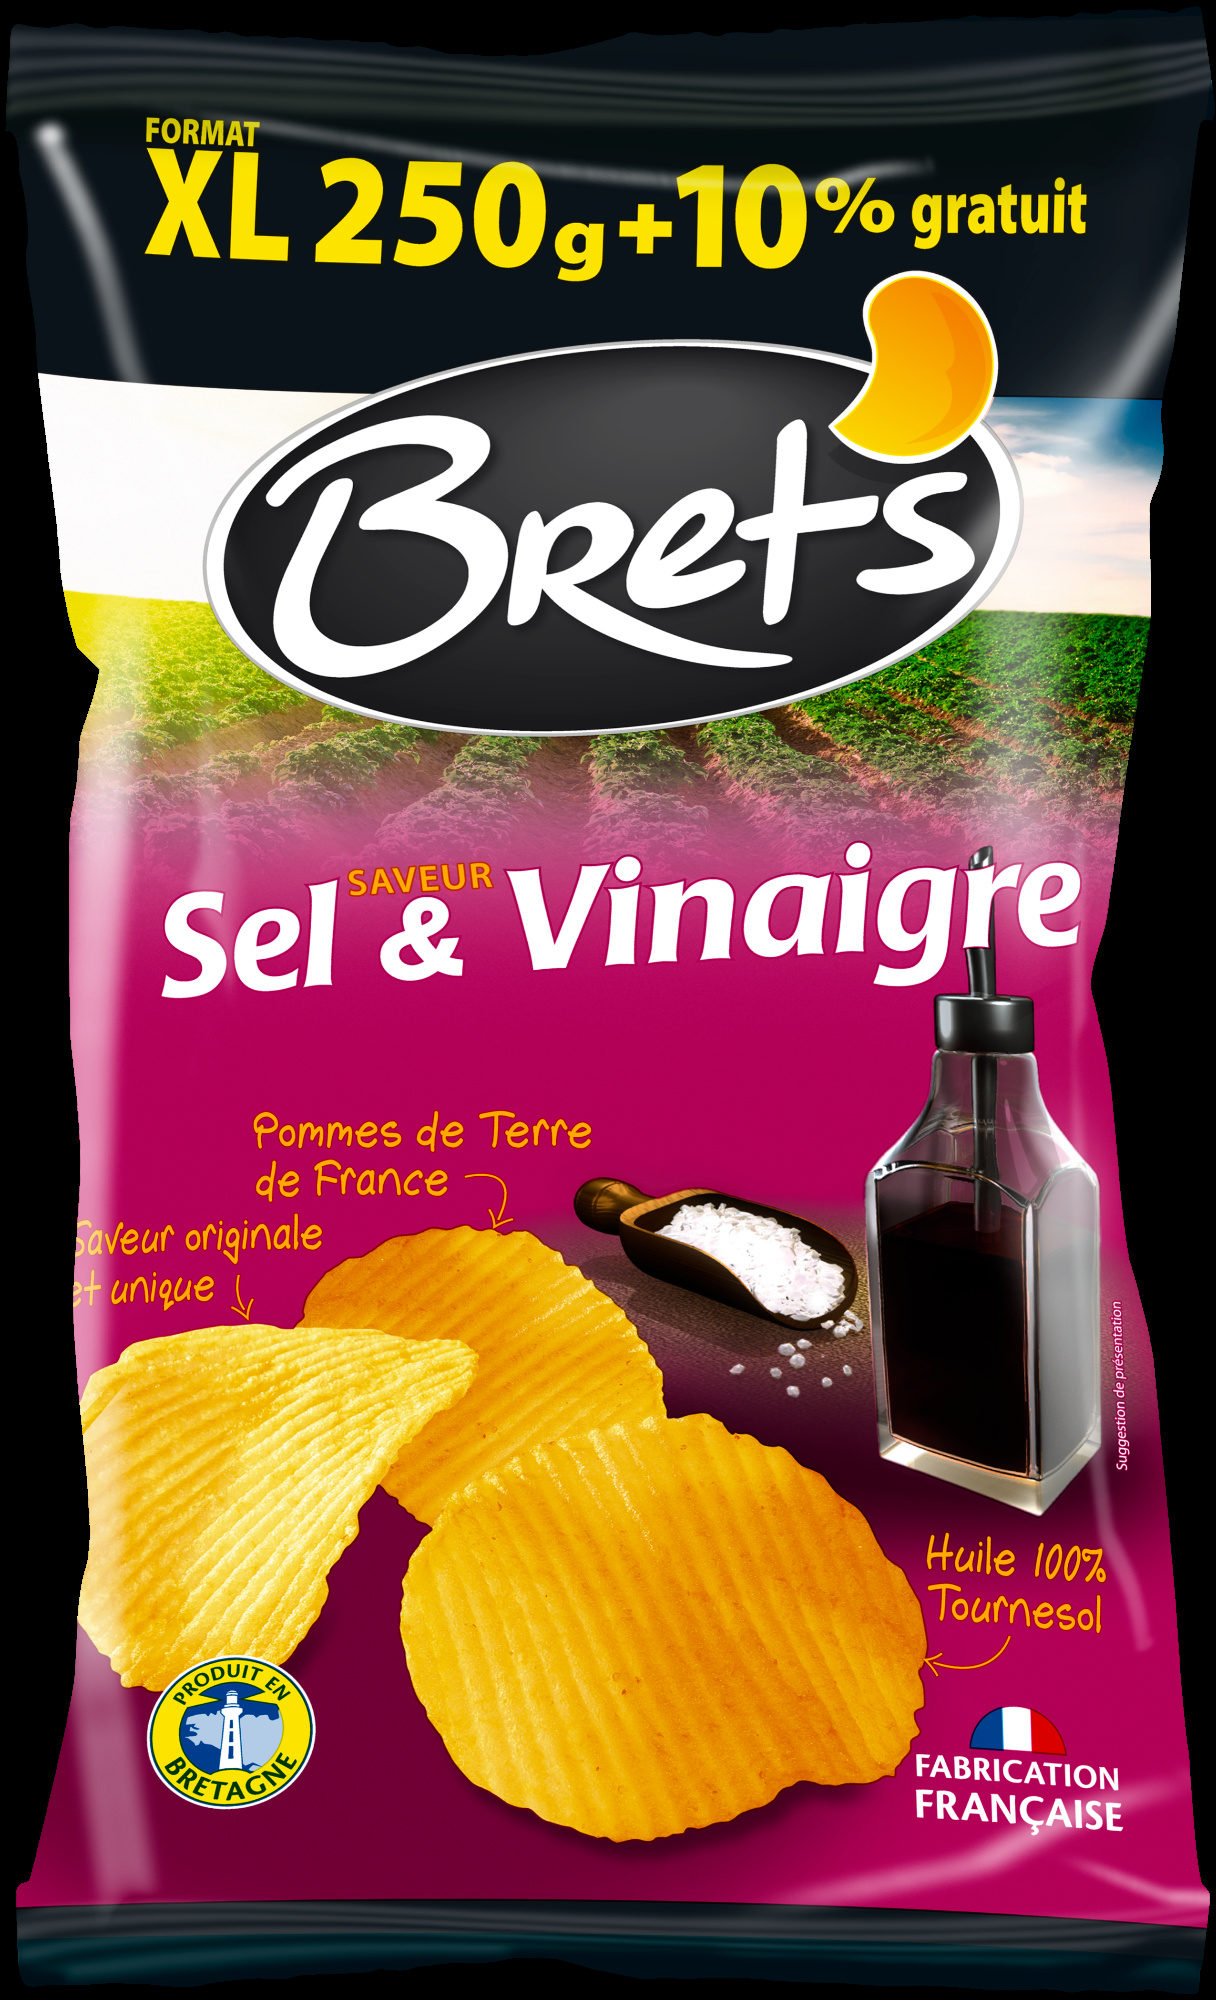 Chips saveur saveur sel & vinaigre (format XL +10% gratuit) - Product - fr